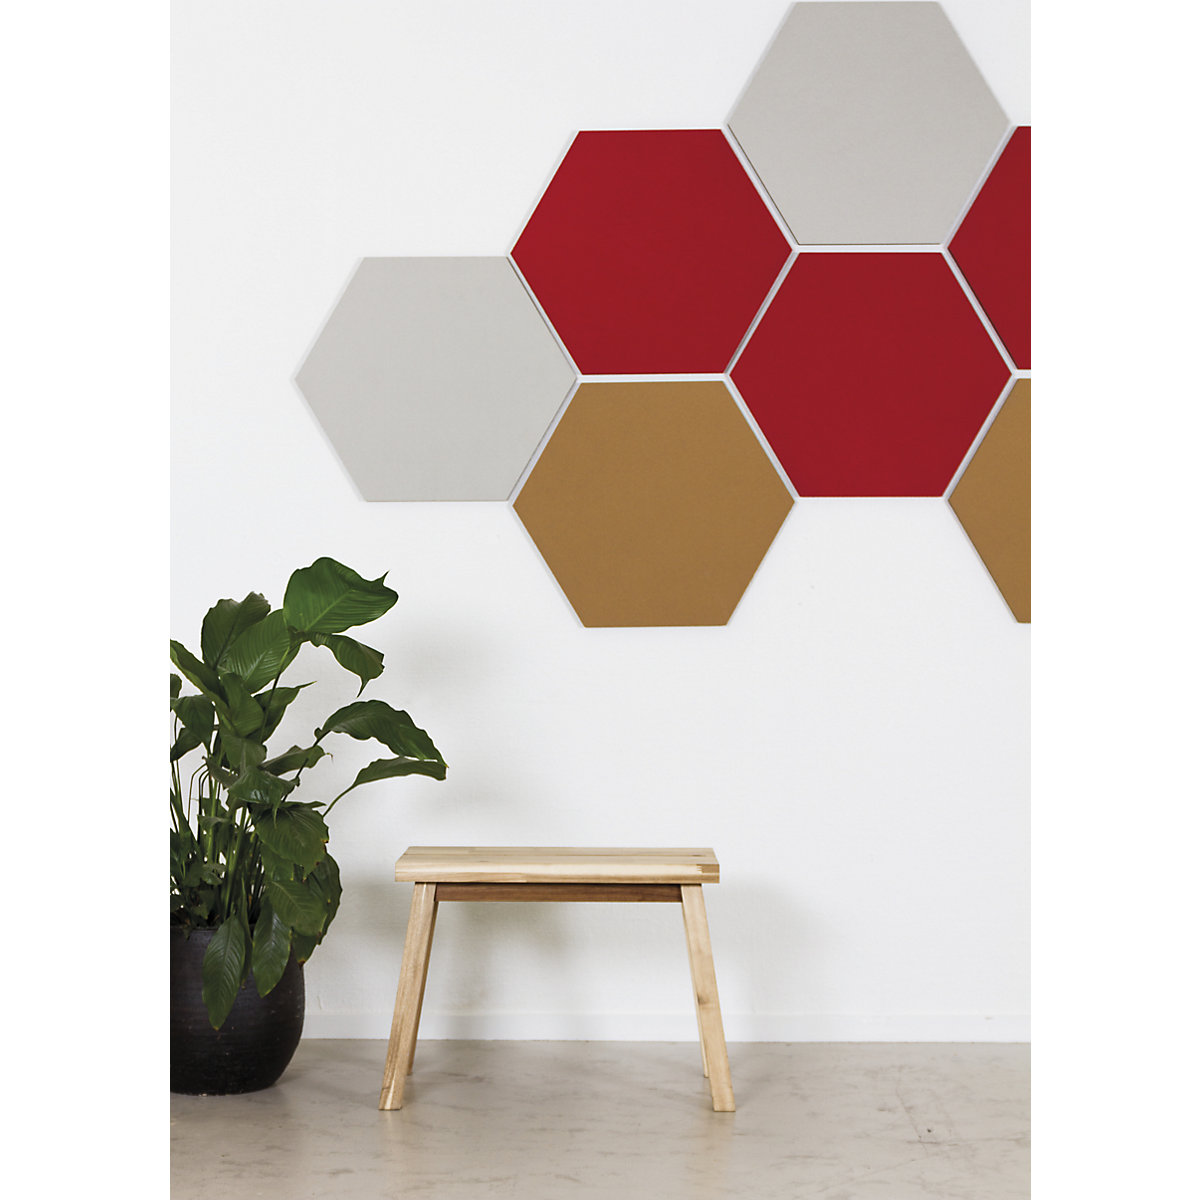 Hexagonal designer pin board – Chameleon (Product illustration 12)-11